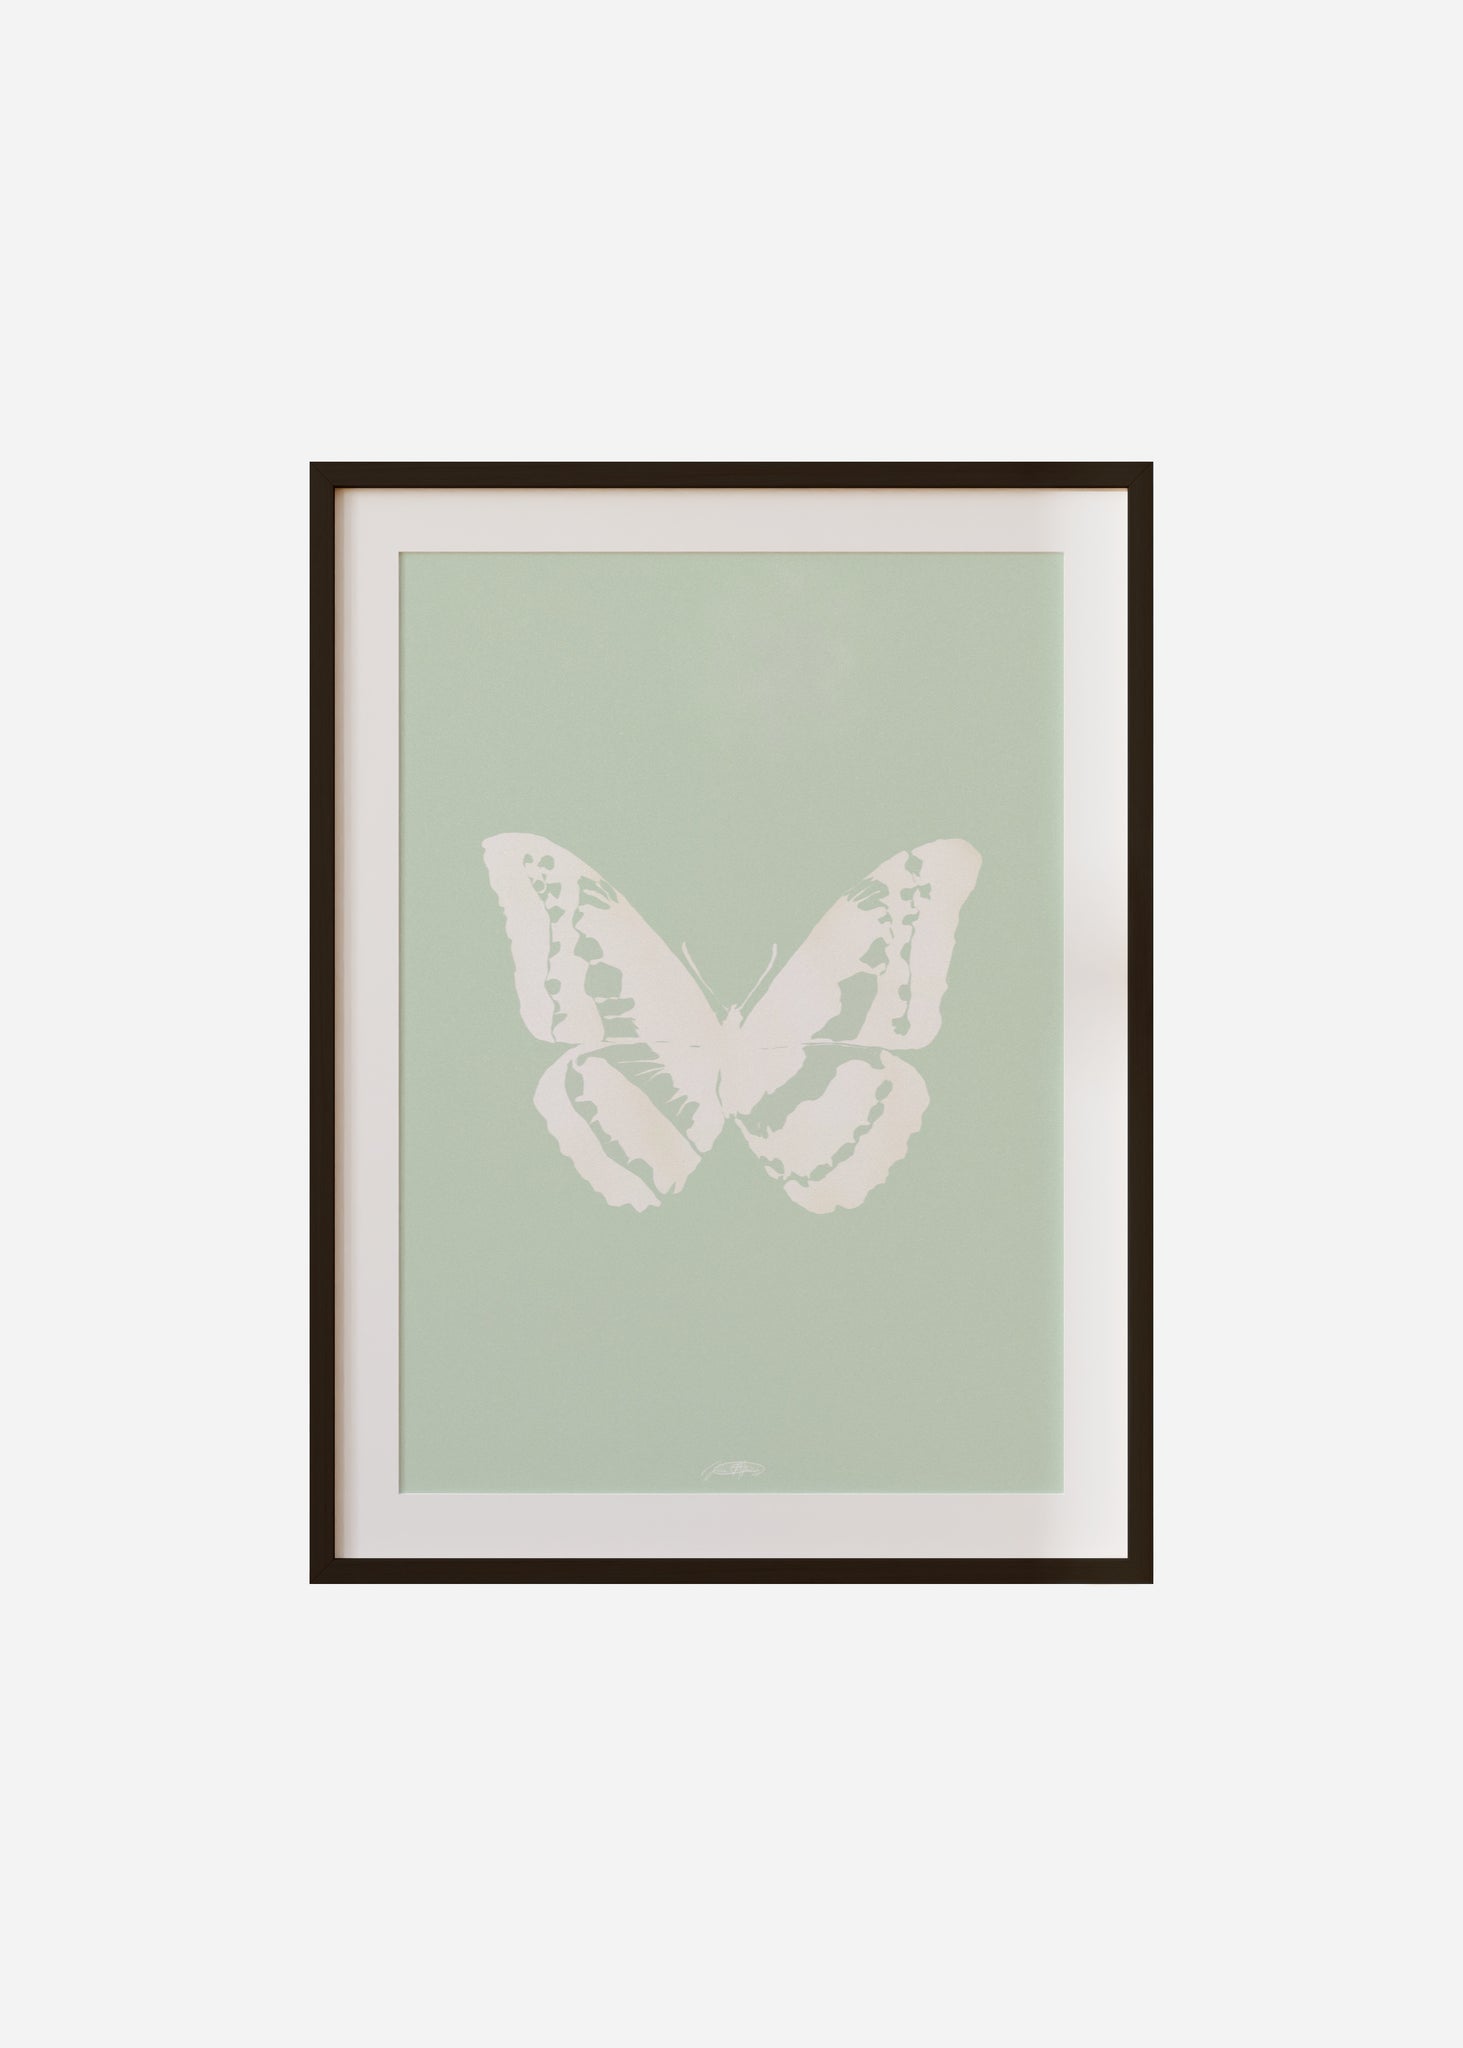 Butterflies / Psyche 006 Framed & Mounted Print